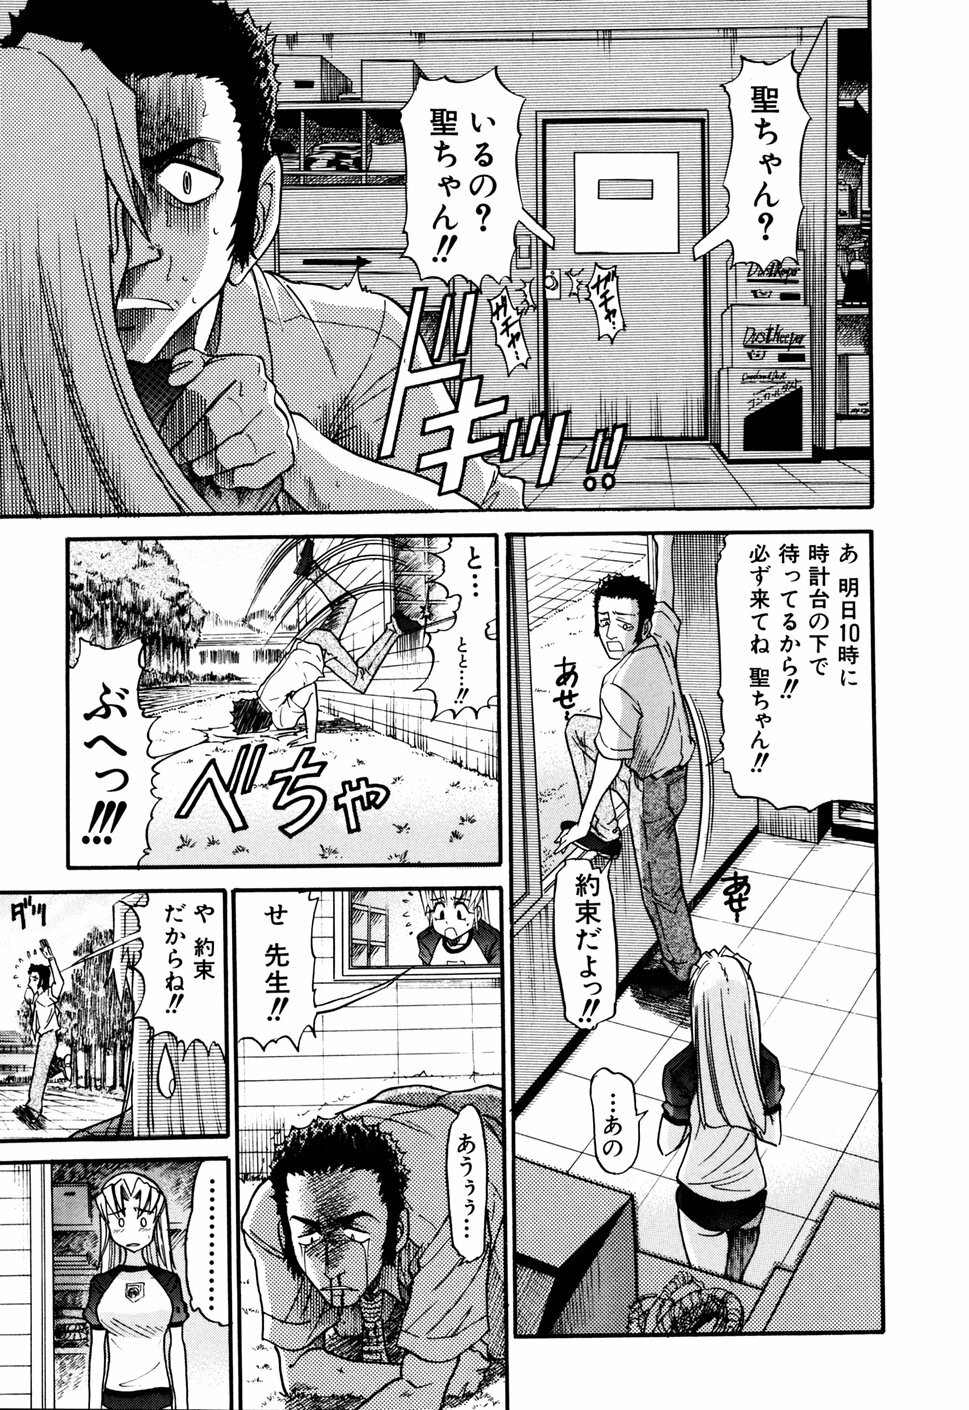 [DISTANCE] Ochiru Tenshi Vol. 1 page 47 full